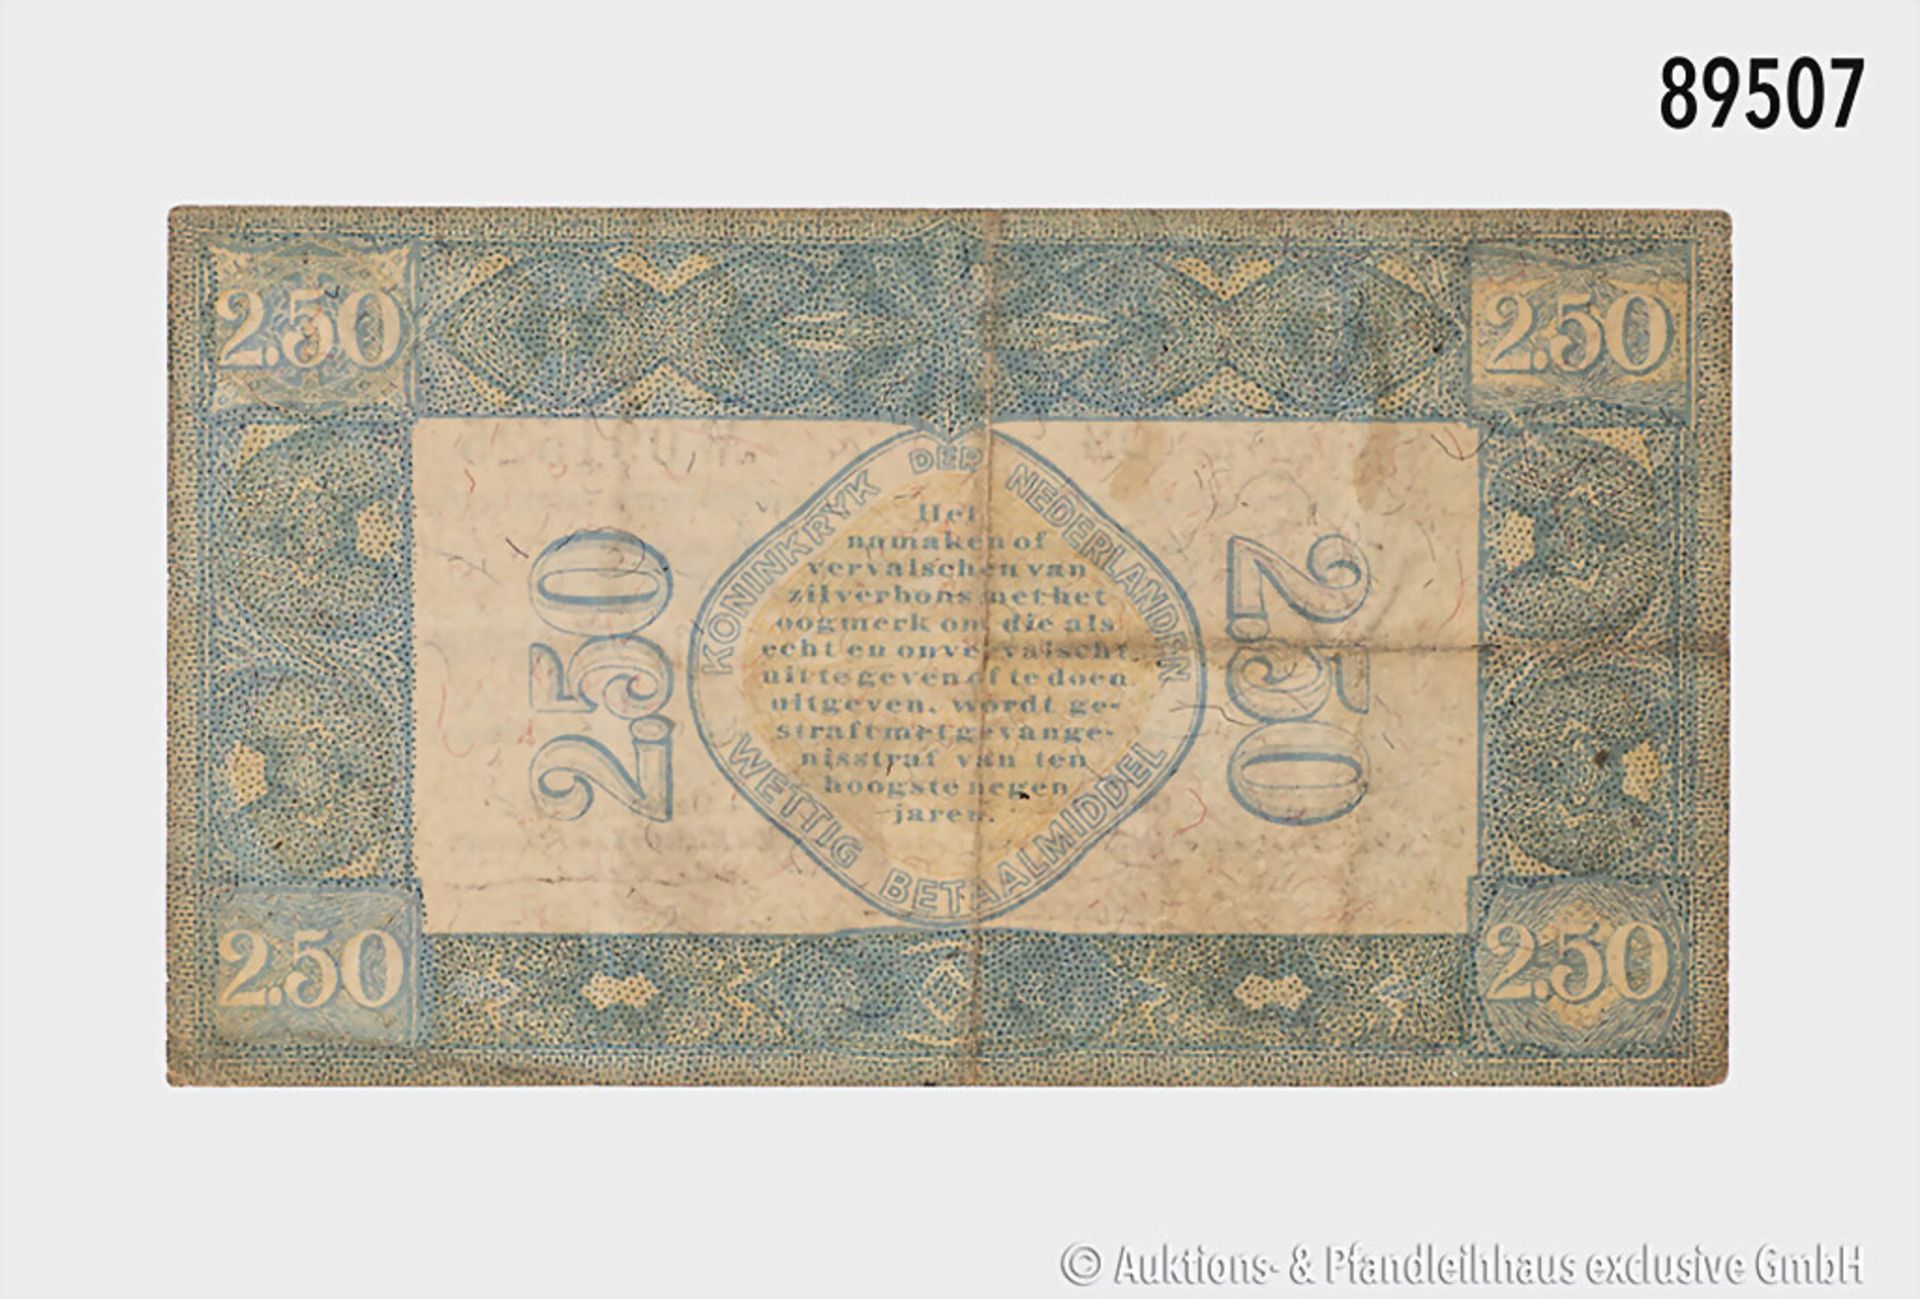 Niederlande, Zilverbon zu 2,50 Gulden, 1. Dezember 1922, Serie DN Nr. 091525, ... - Bild 2 aus 2